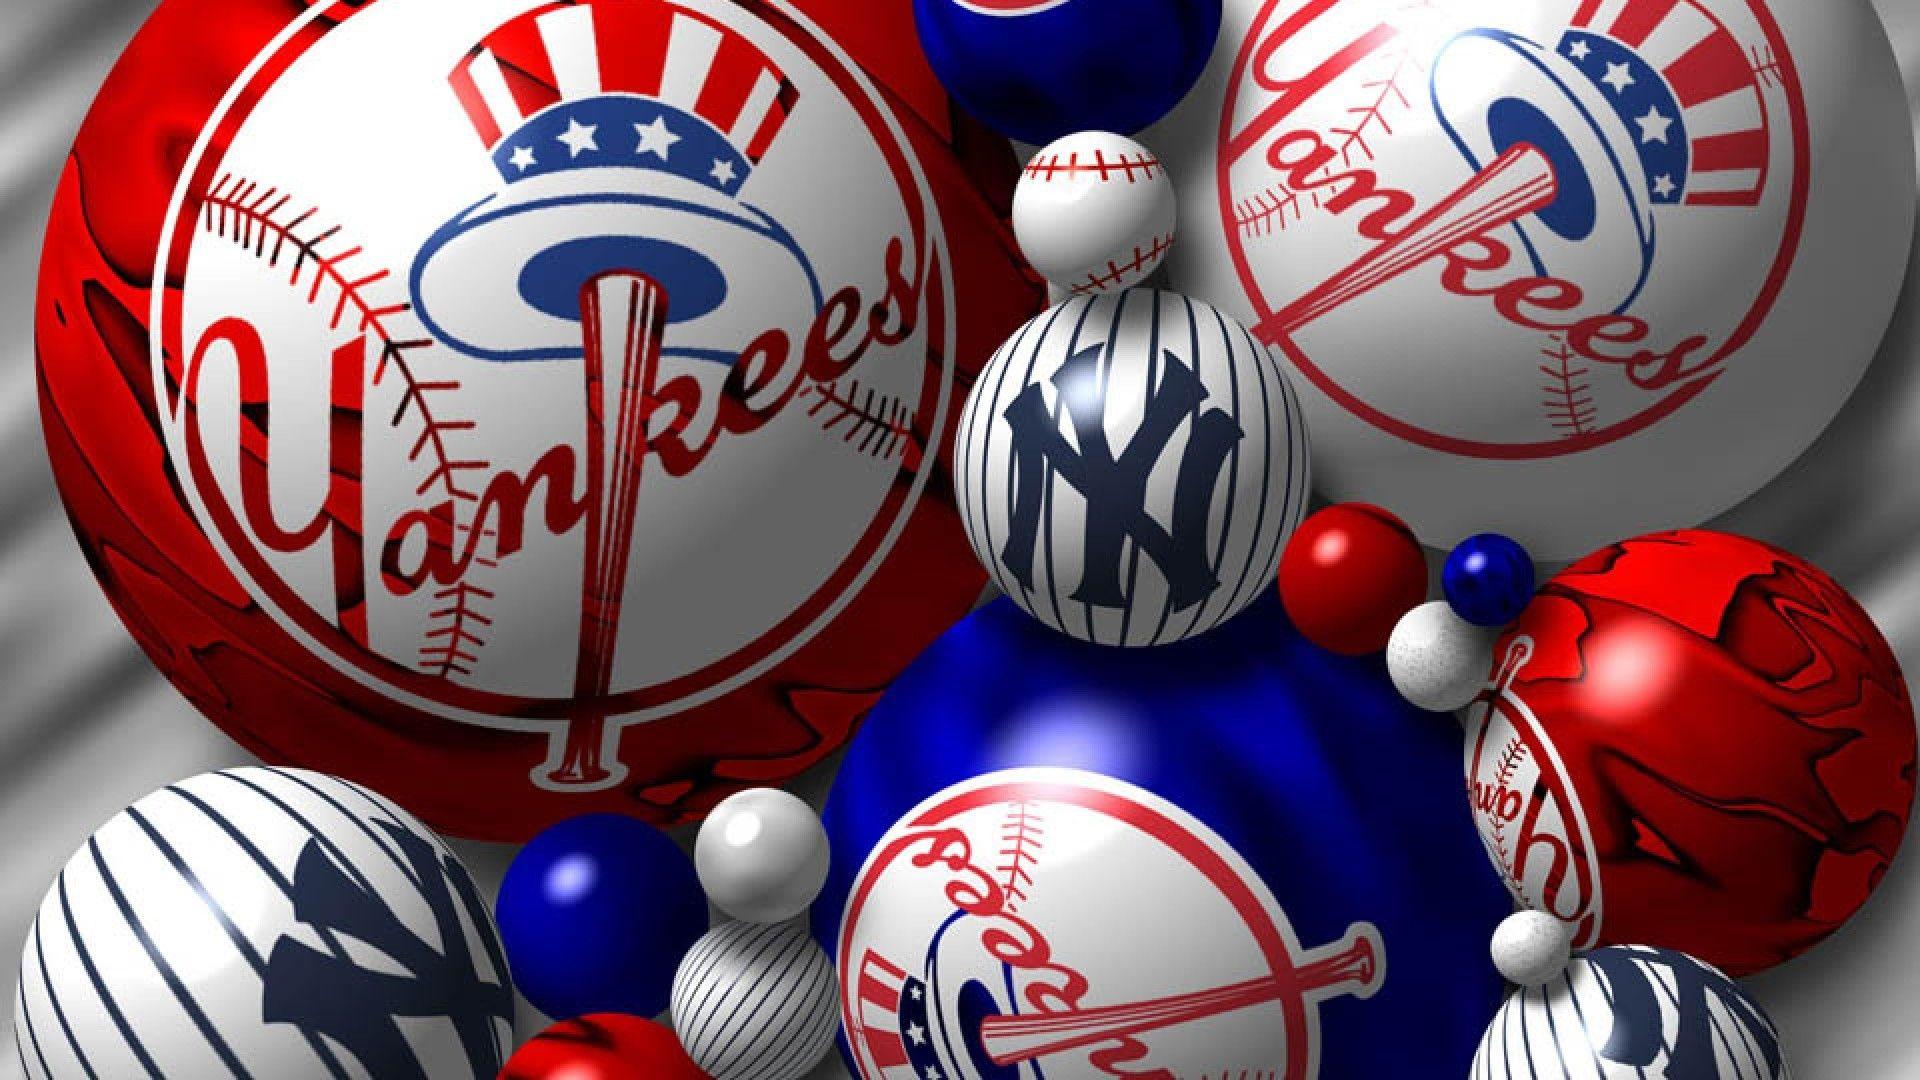 New York Yankees Team Logo - MLB New York Yankees Team Logo wallpaper 2018 in Baseball